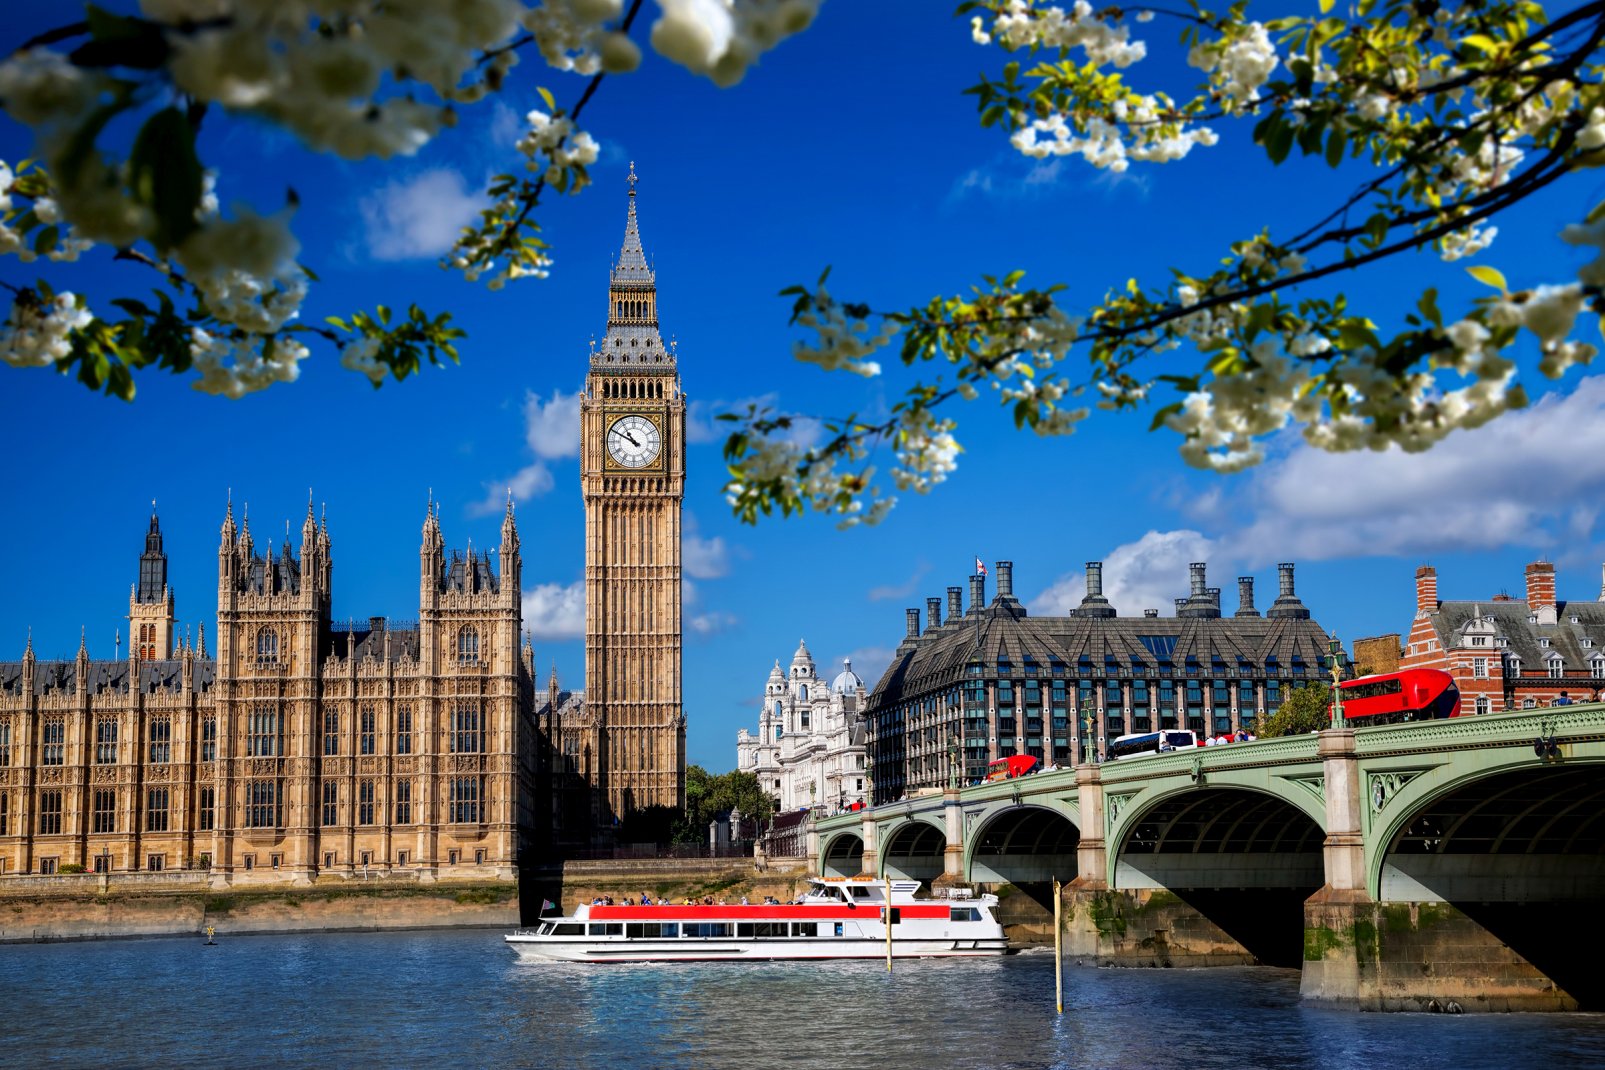 Capitale au rayonnement mondial de par sa place financière et son aura culturel, Londres est la plus grande ville du Royaume-Uni. Son parlement, situé dans le palais de Westminster, emblémisée par la tour Elisabeth et son clocher nommé Big Ben, longe la Tamise.